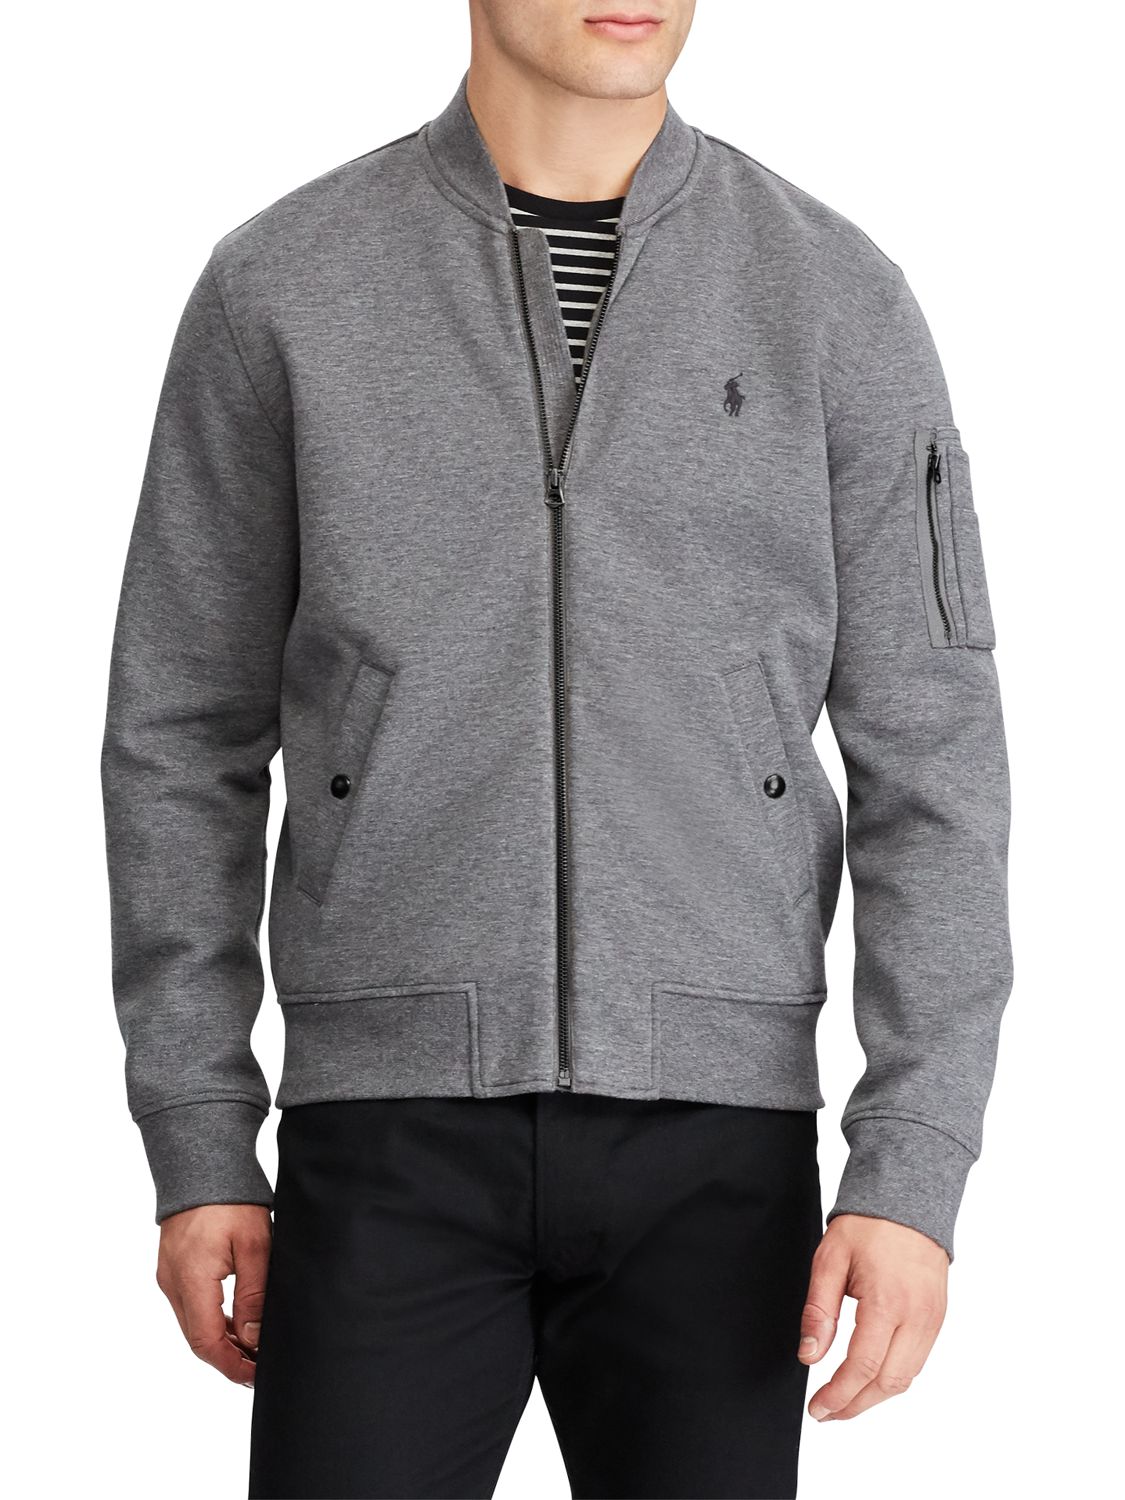 polo grey jacket